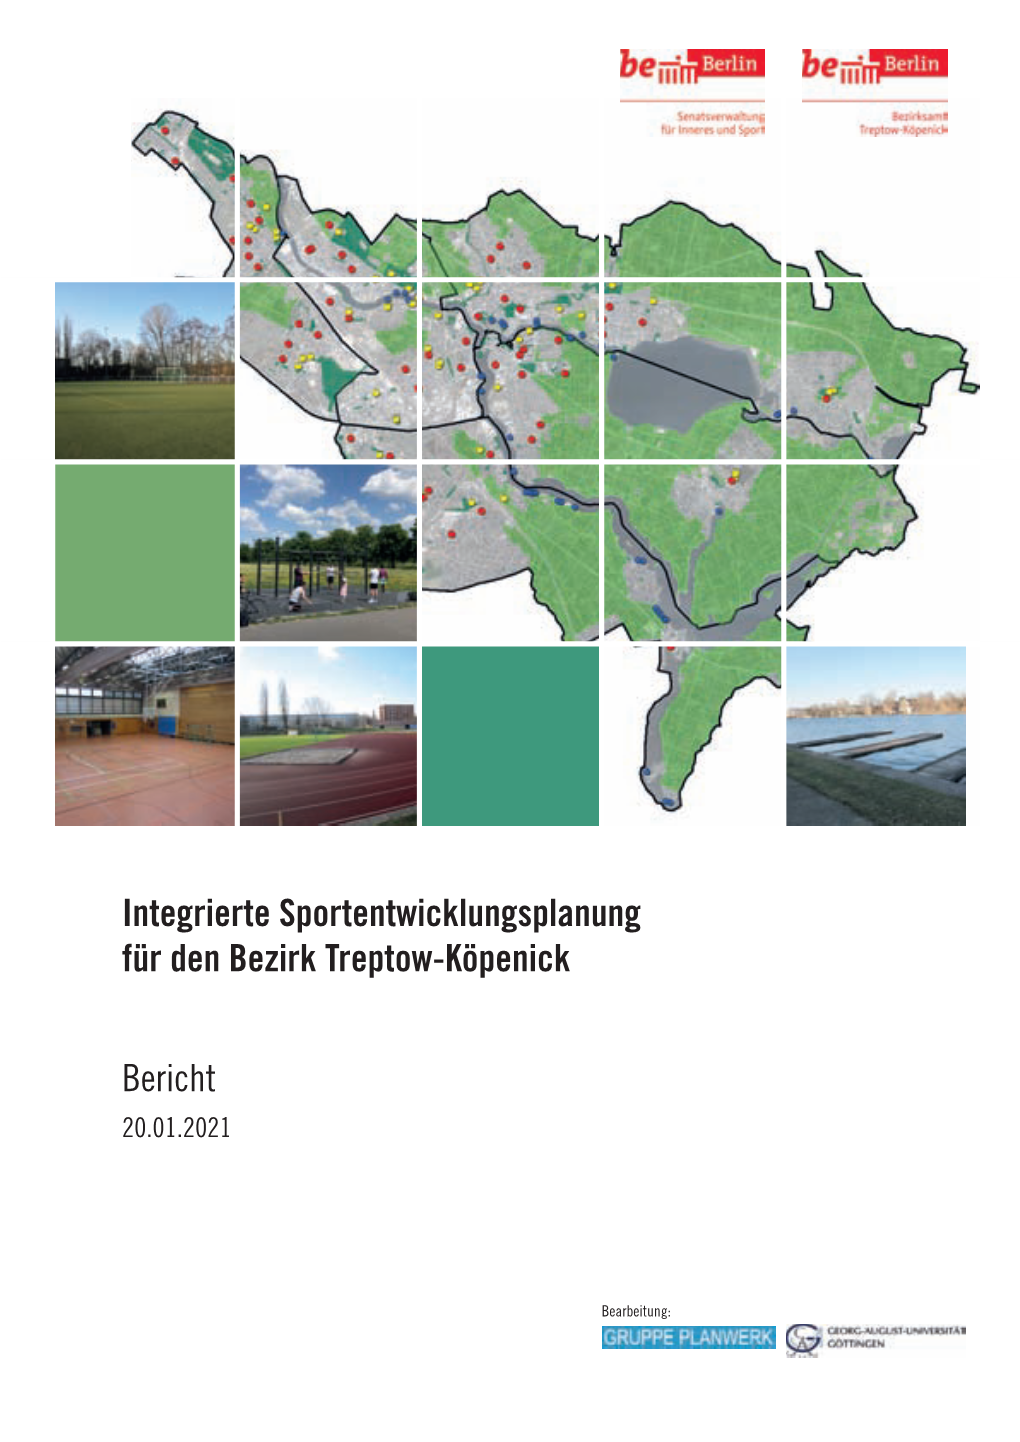 Integrierte Sportentwicklungsplanung Für Den Bezirk Treptow-Köpenick